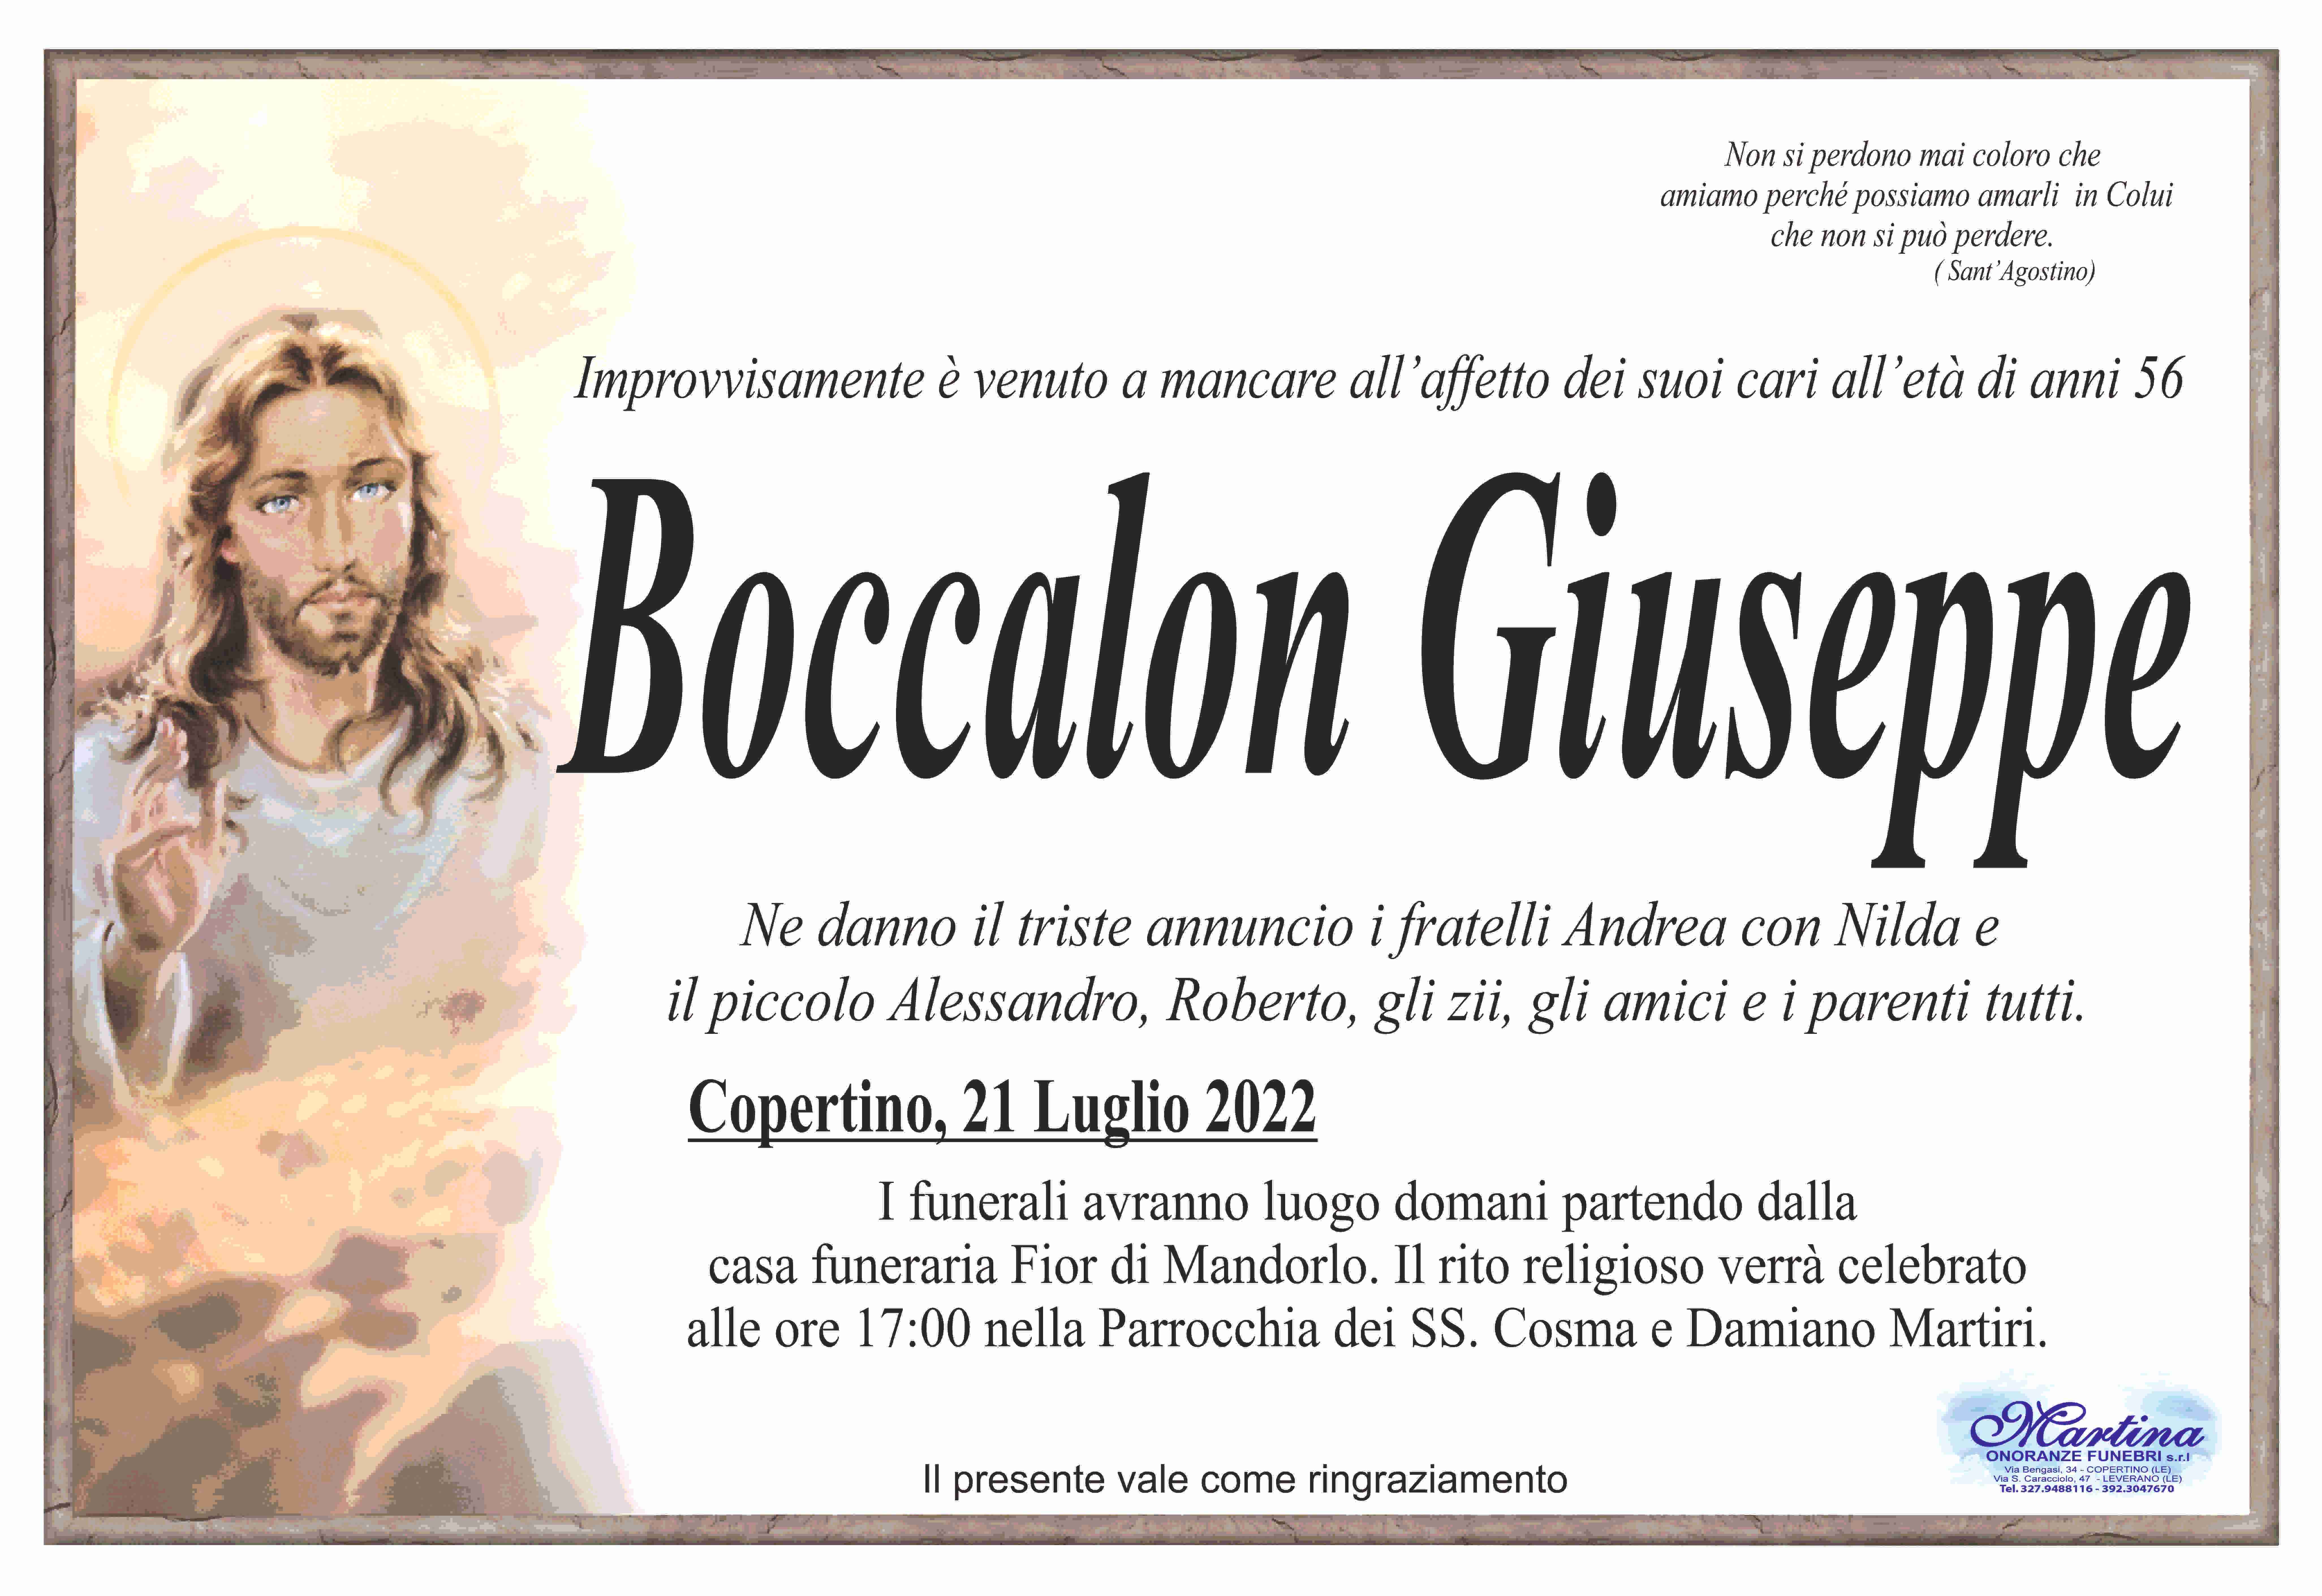 Giuseppe Boccalon